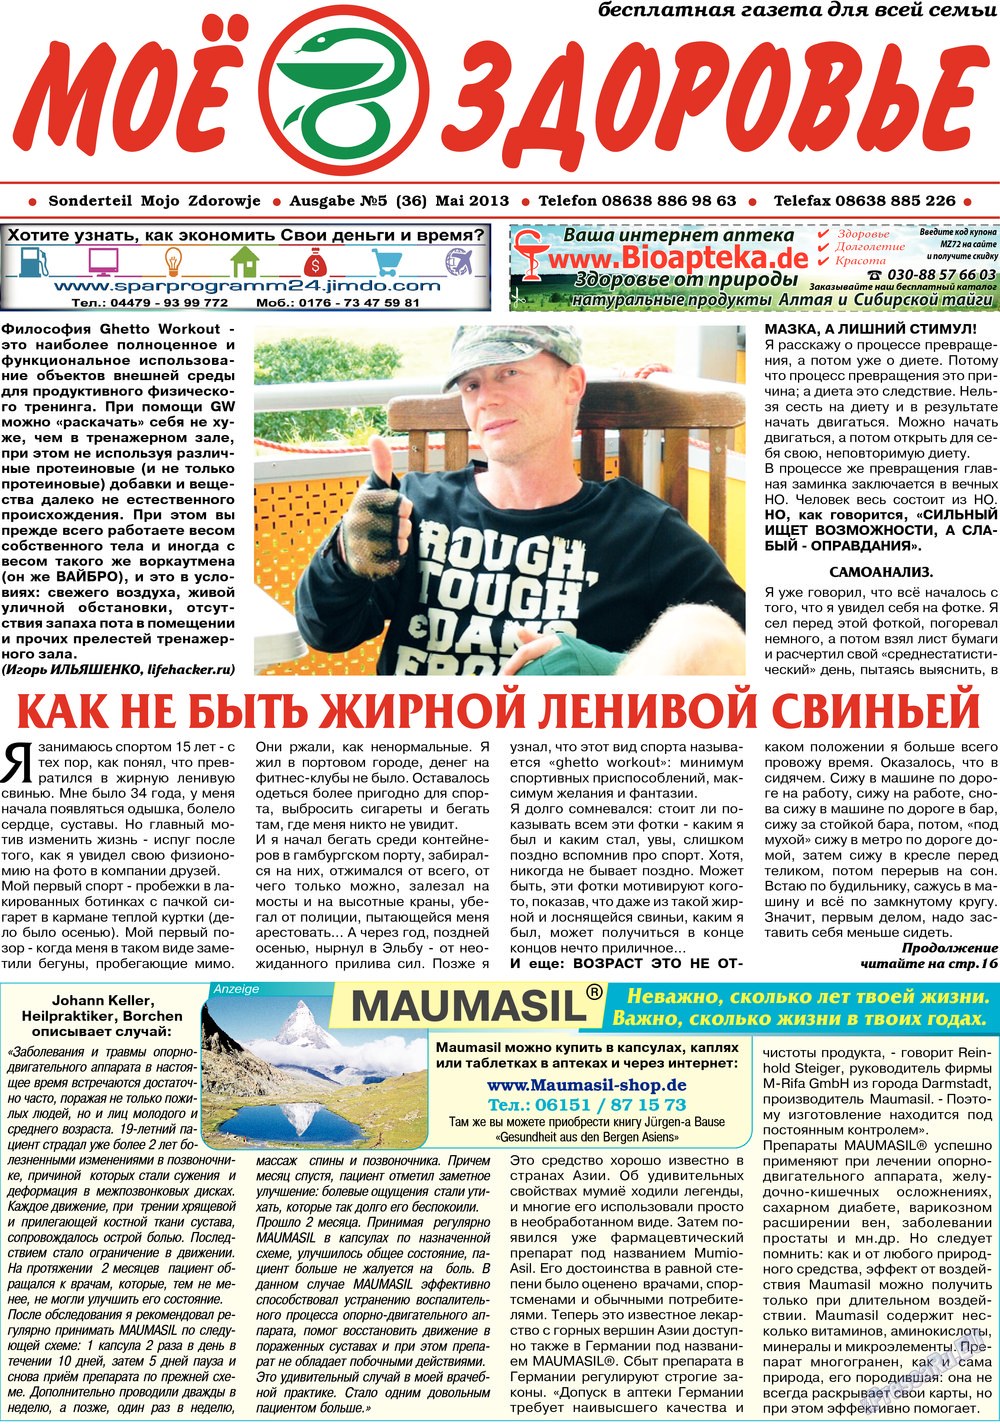 Кругозор (газета). 2013 год, номер 5, стр. 15